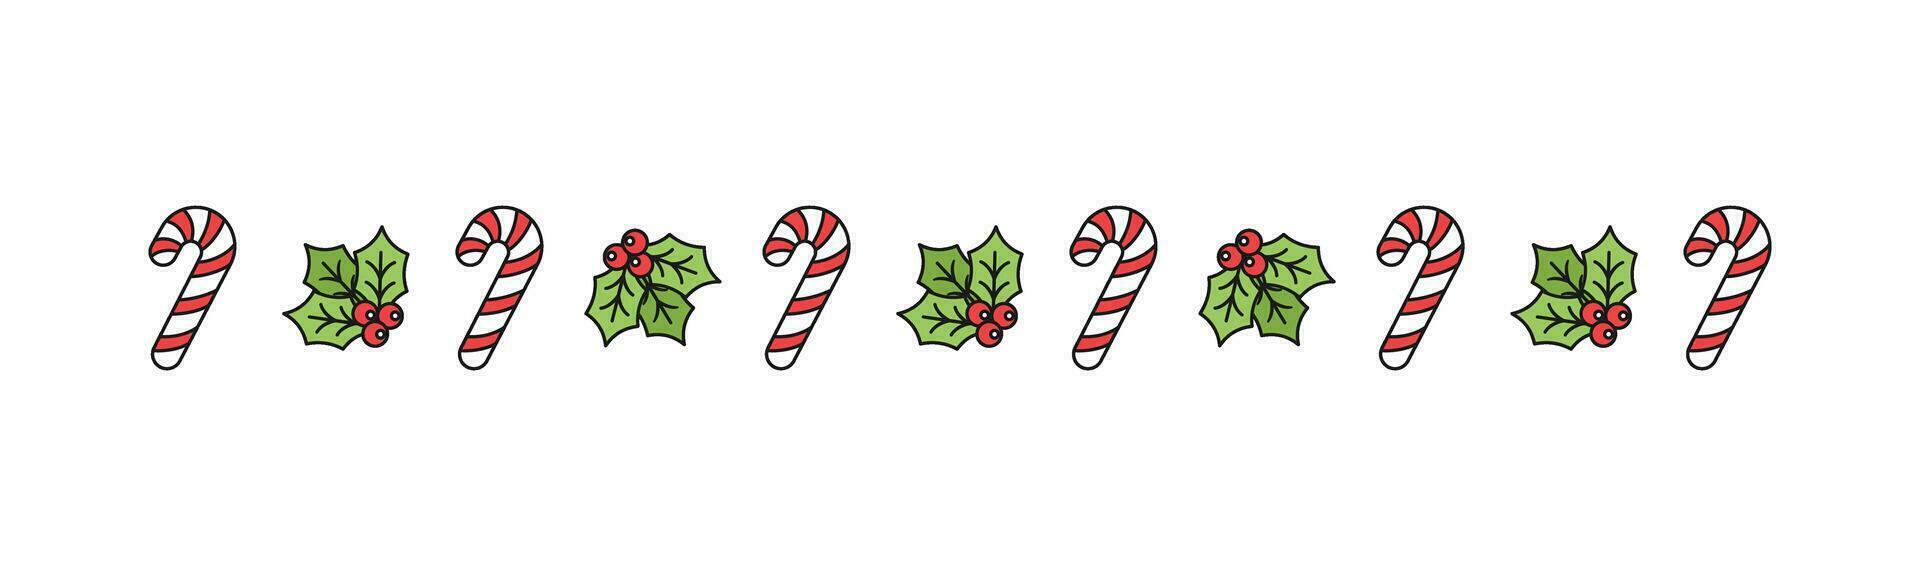 Kerstmis themed decoratief grens en tekst verdeler, maretak en snoep riet patroon. vector illustratie.